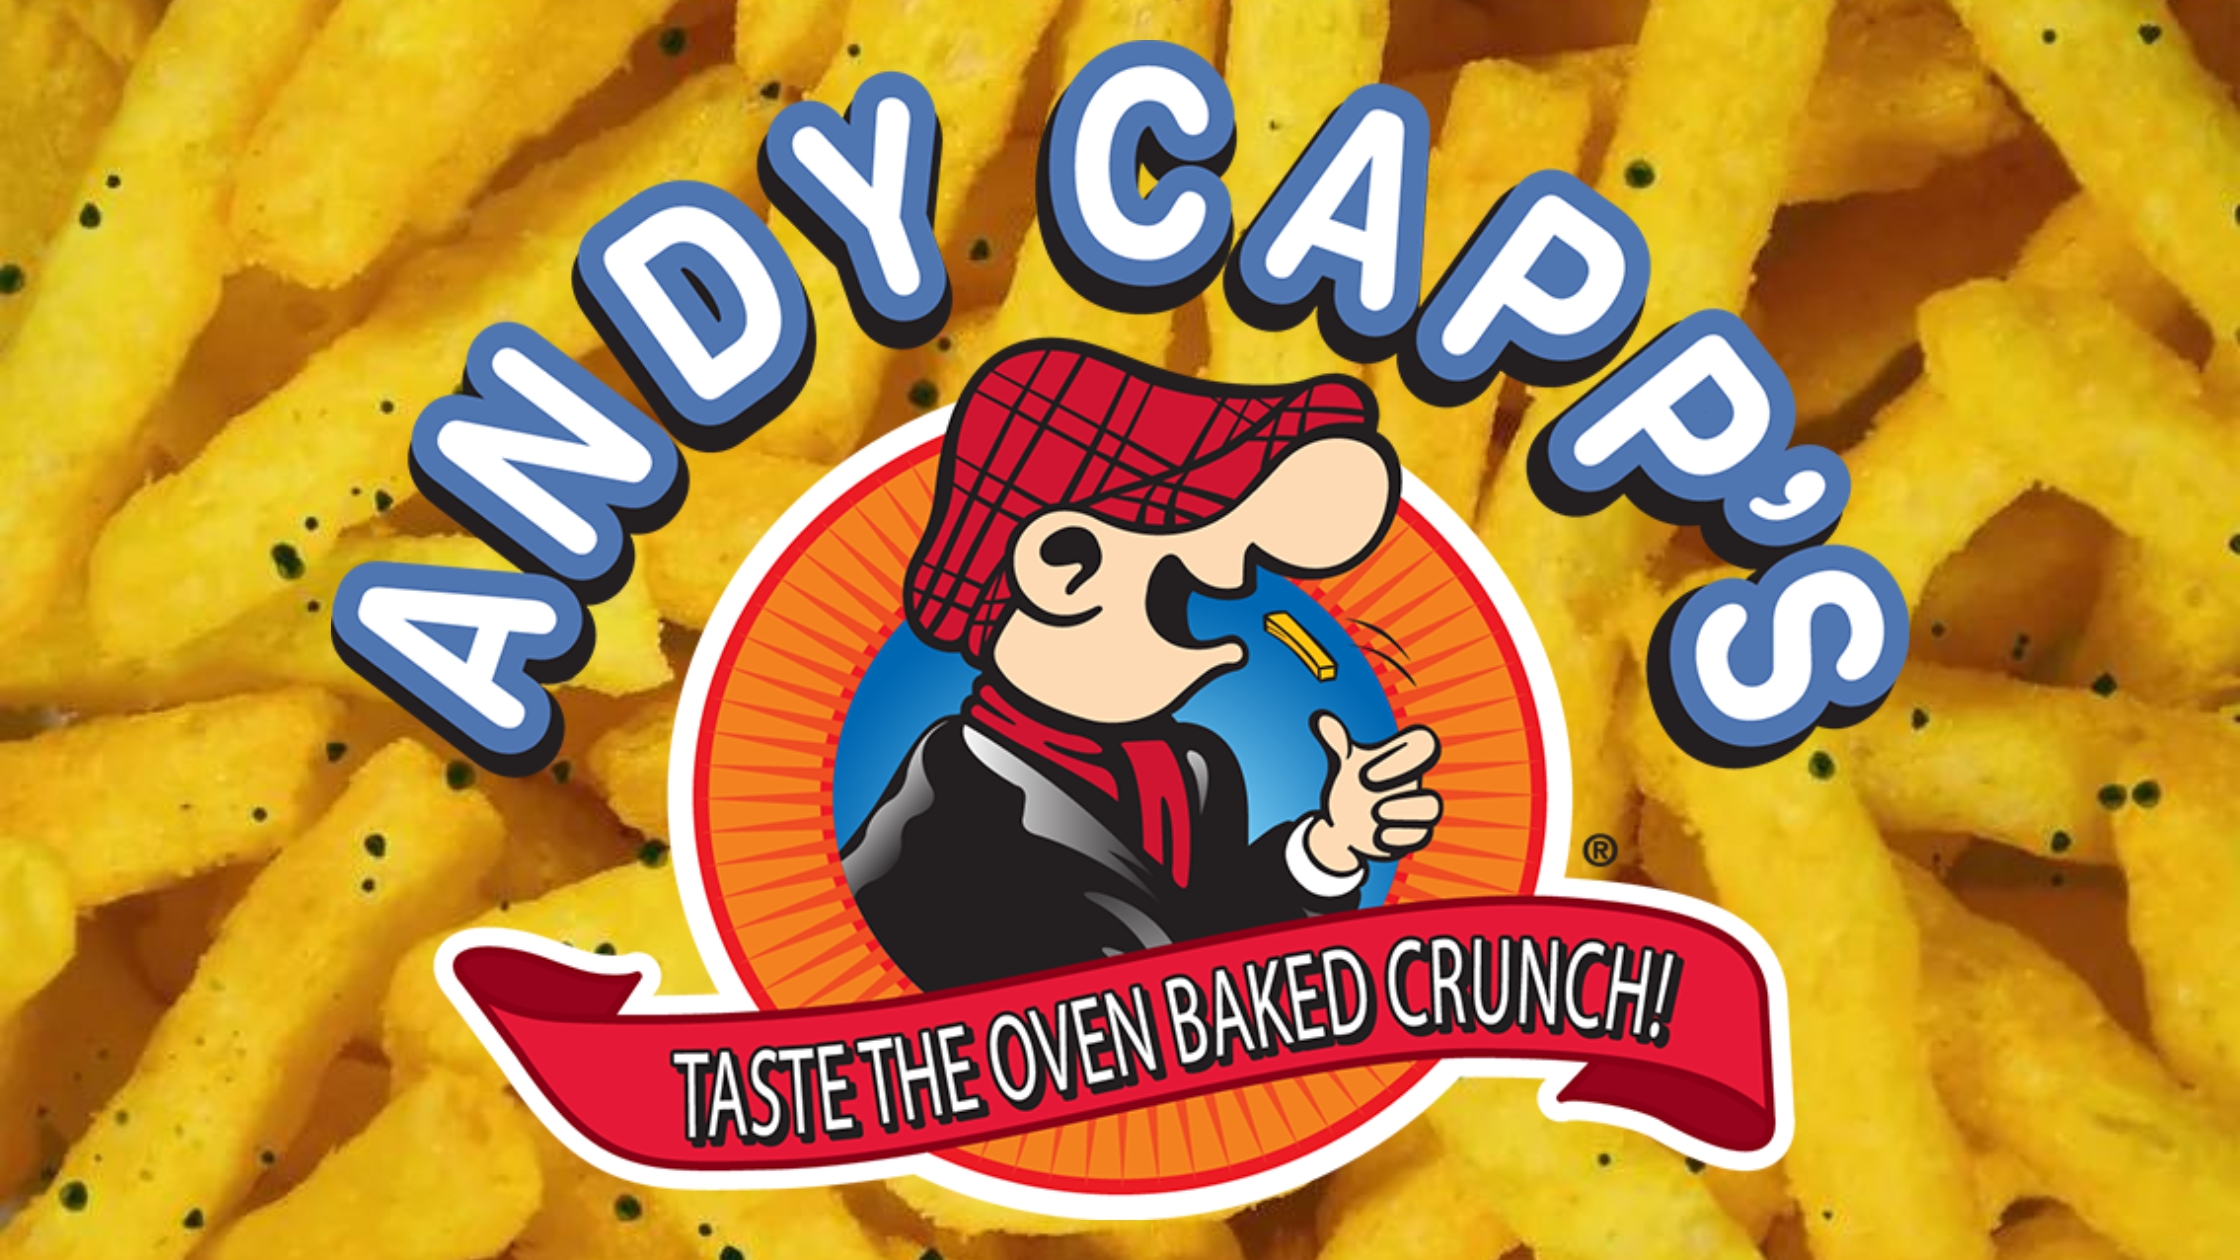 Andy Capp's Big Bag Hot Fries, 8 Oz